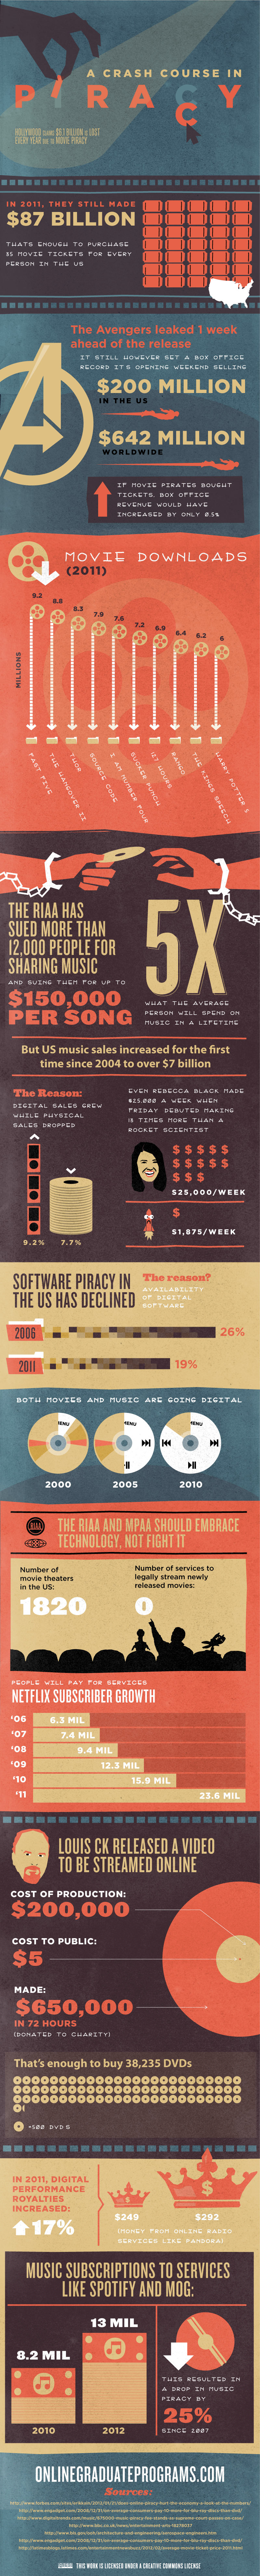 Le piratage et ses conséquences résumés en une infographie